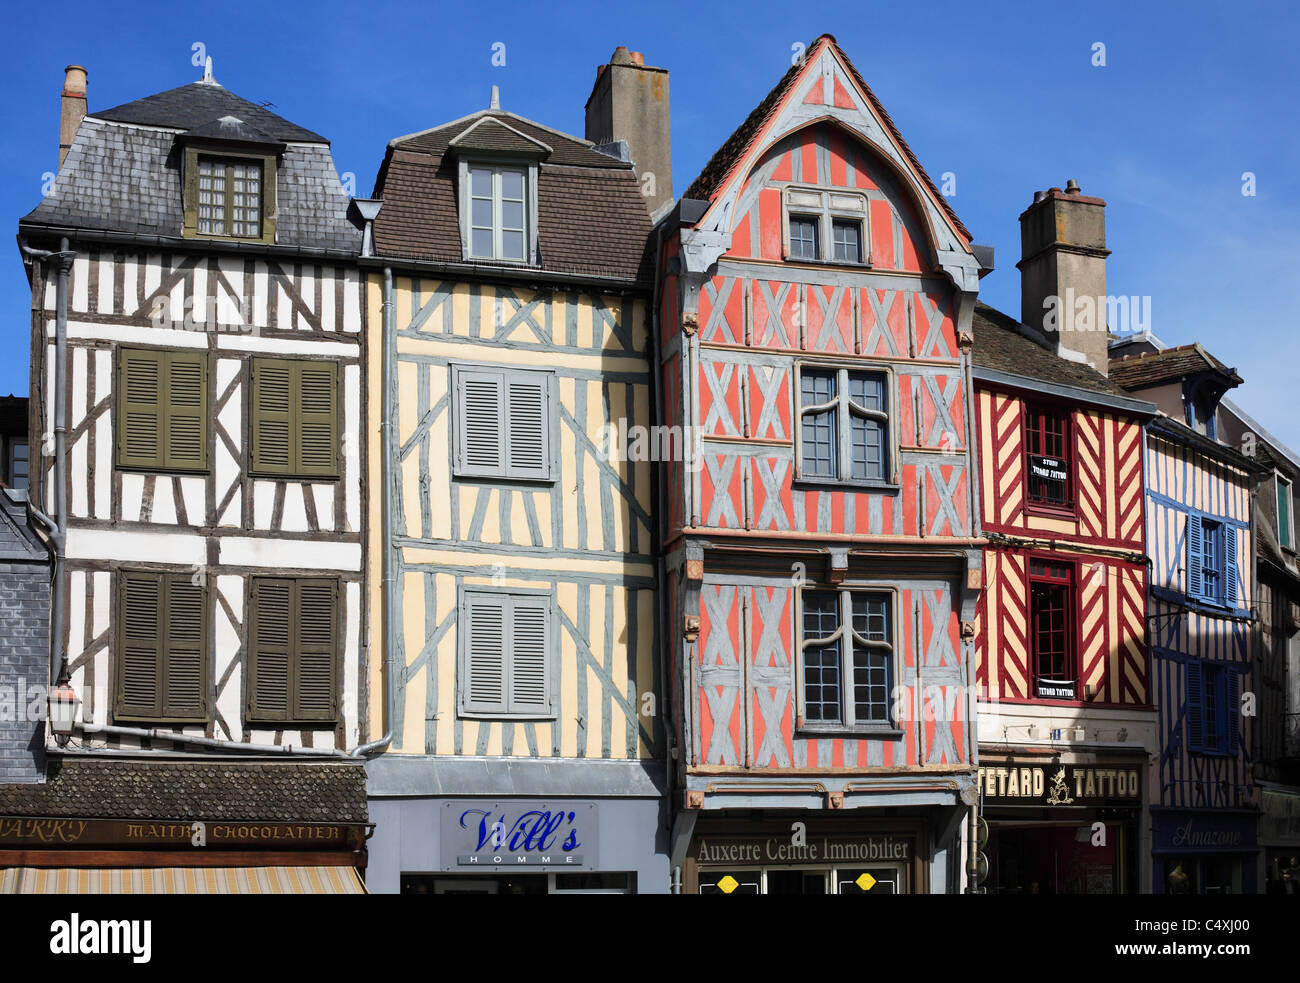 Des colombages, bâtiments médiévaux à Auxerre, France. Banque D'Images